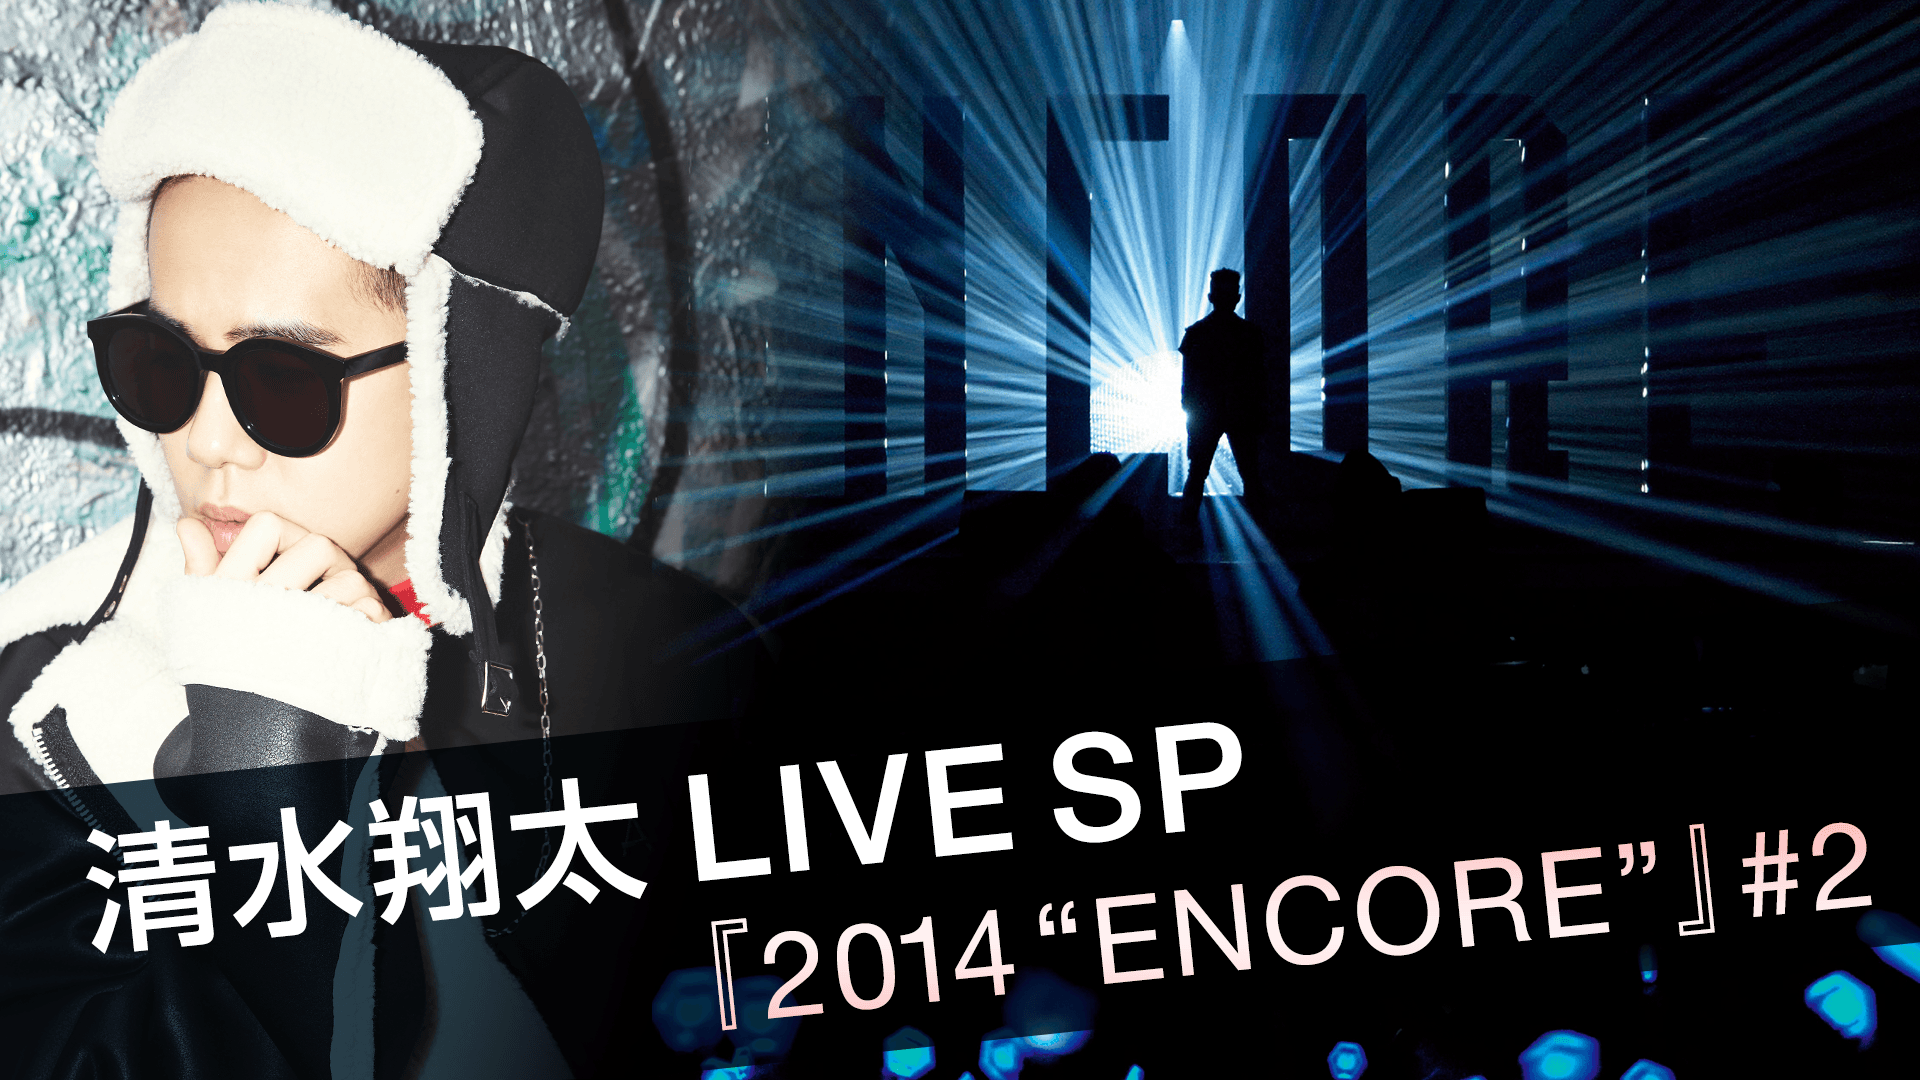 清水翔太LIVE SP 『2014 “ENCORE”』 #2 | 新しい未来のテレビ | ABEMA